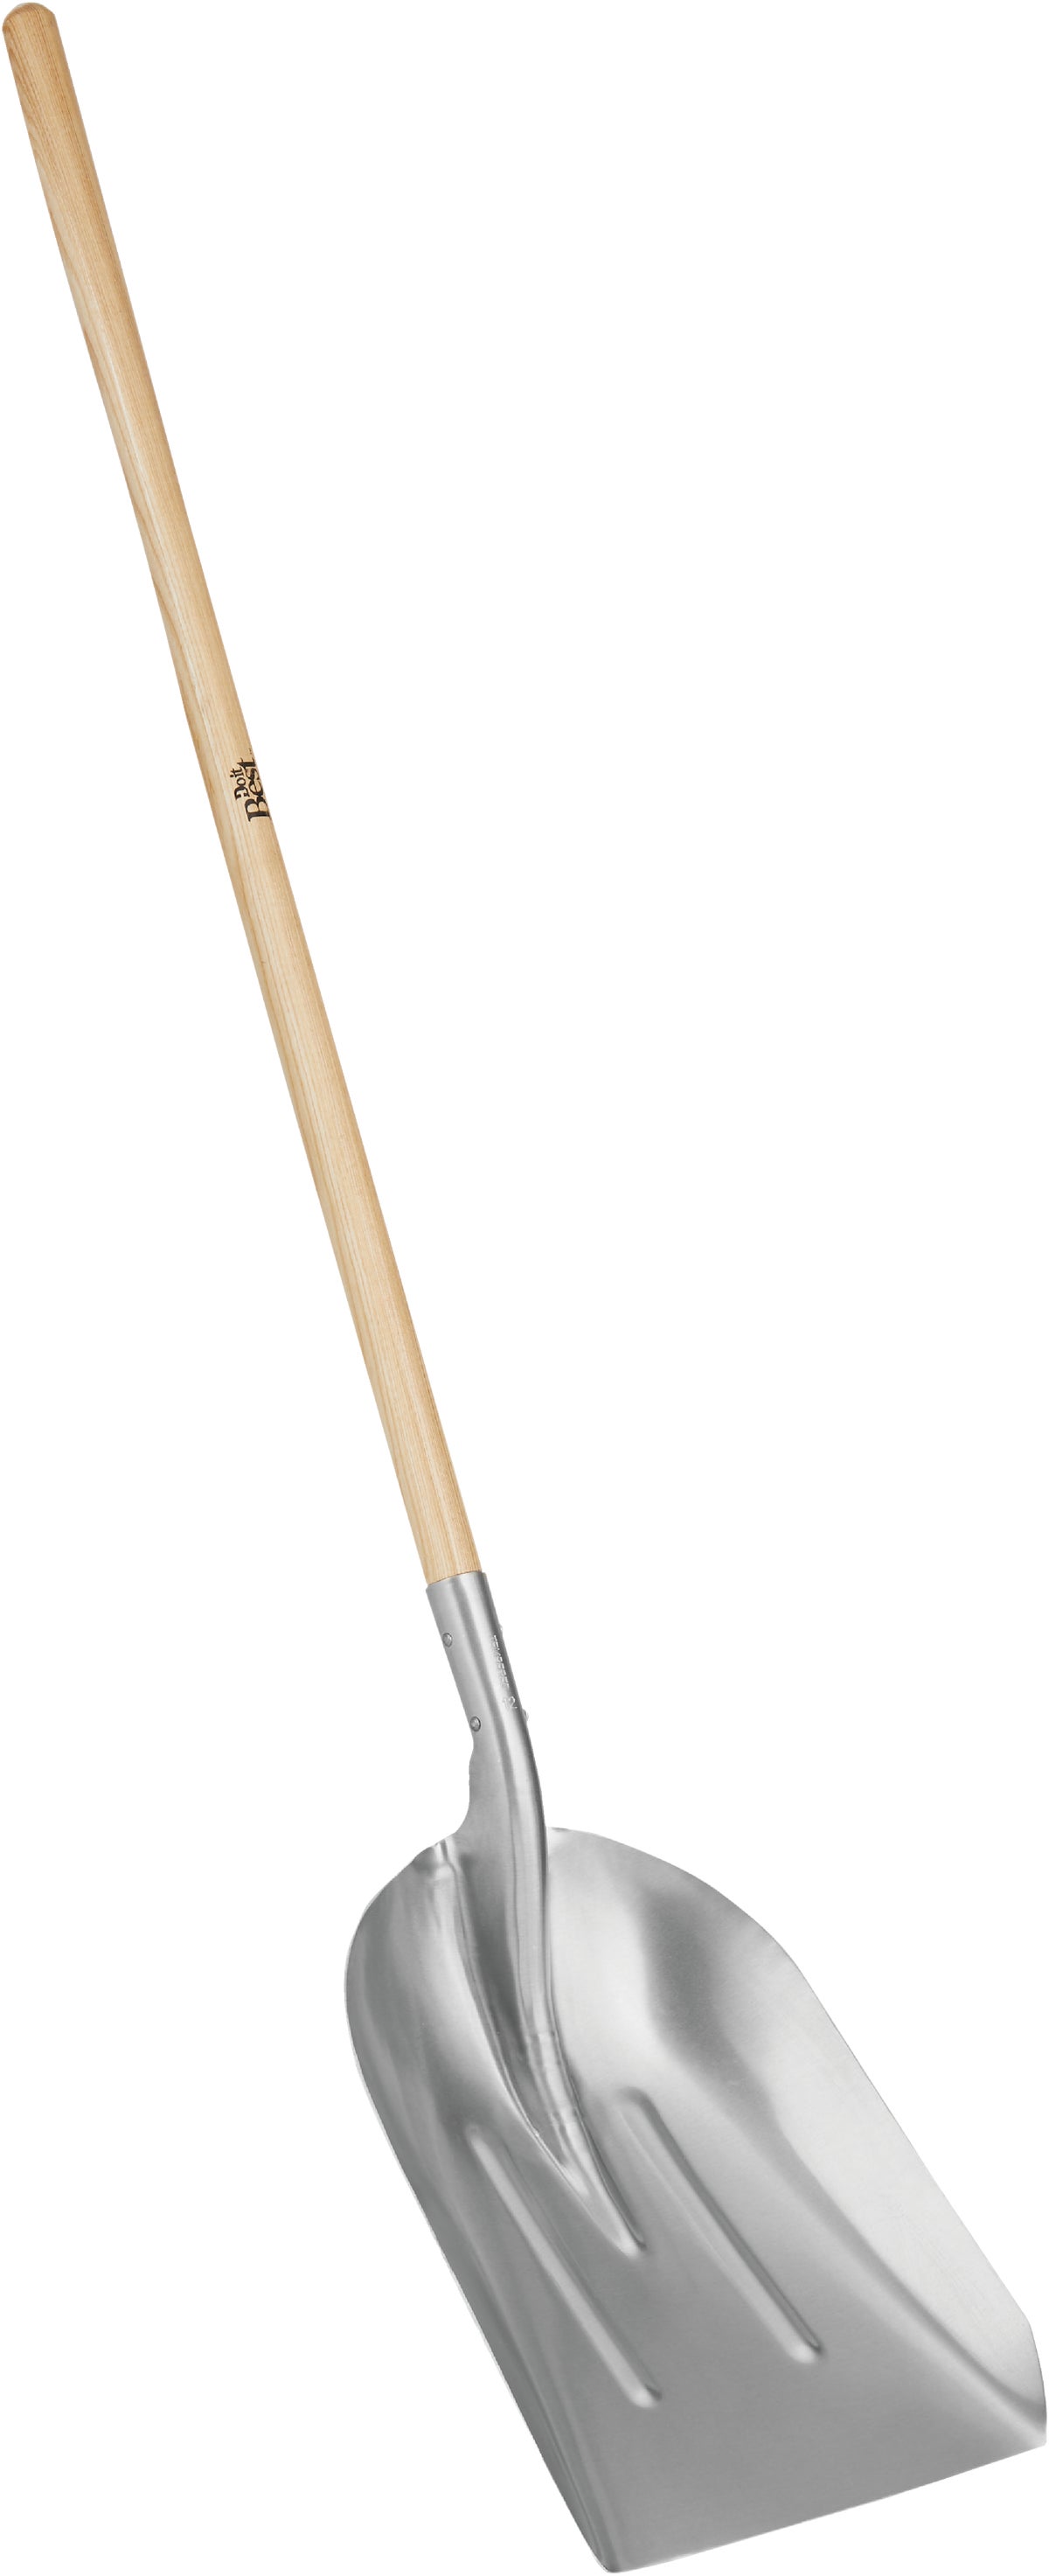 Buy Do it Best Wood Handle Aluminum Scoop Shovel 18.9 In.